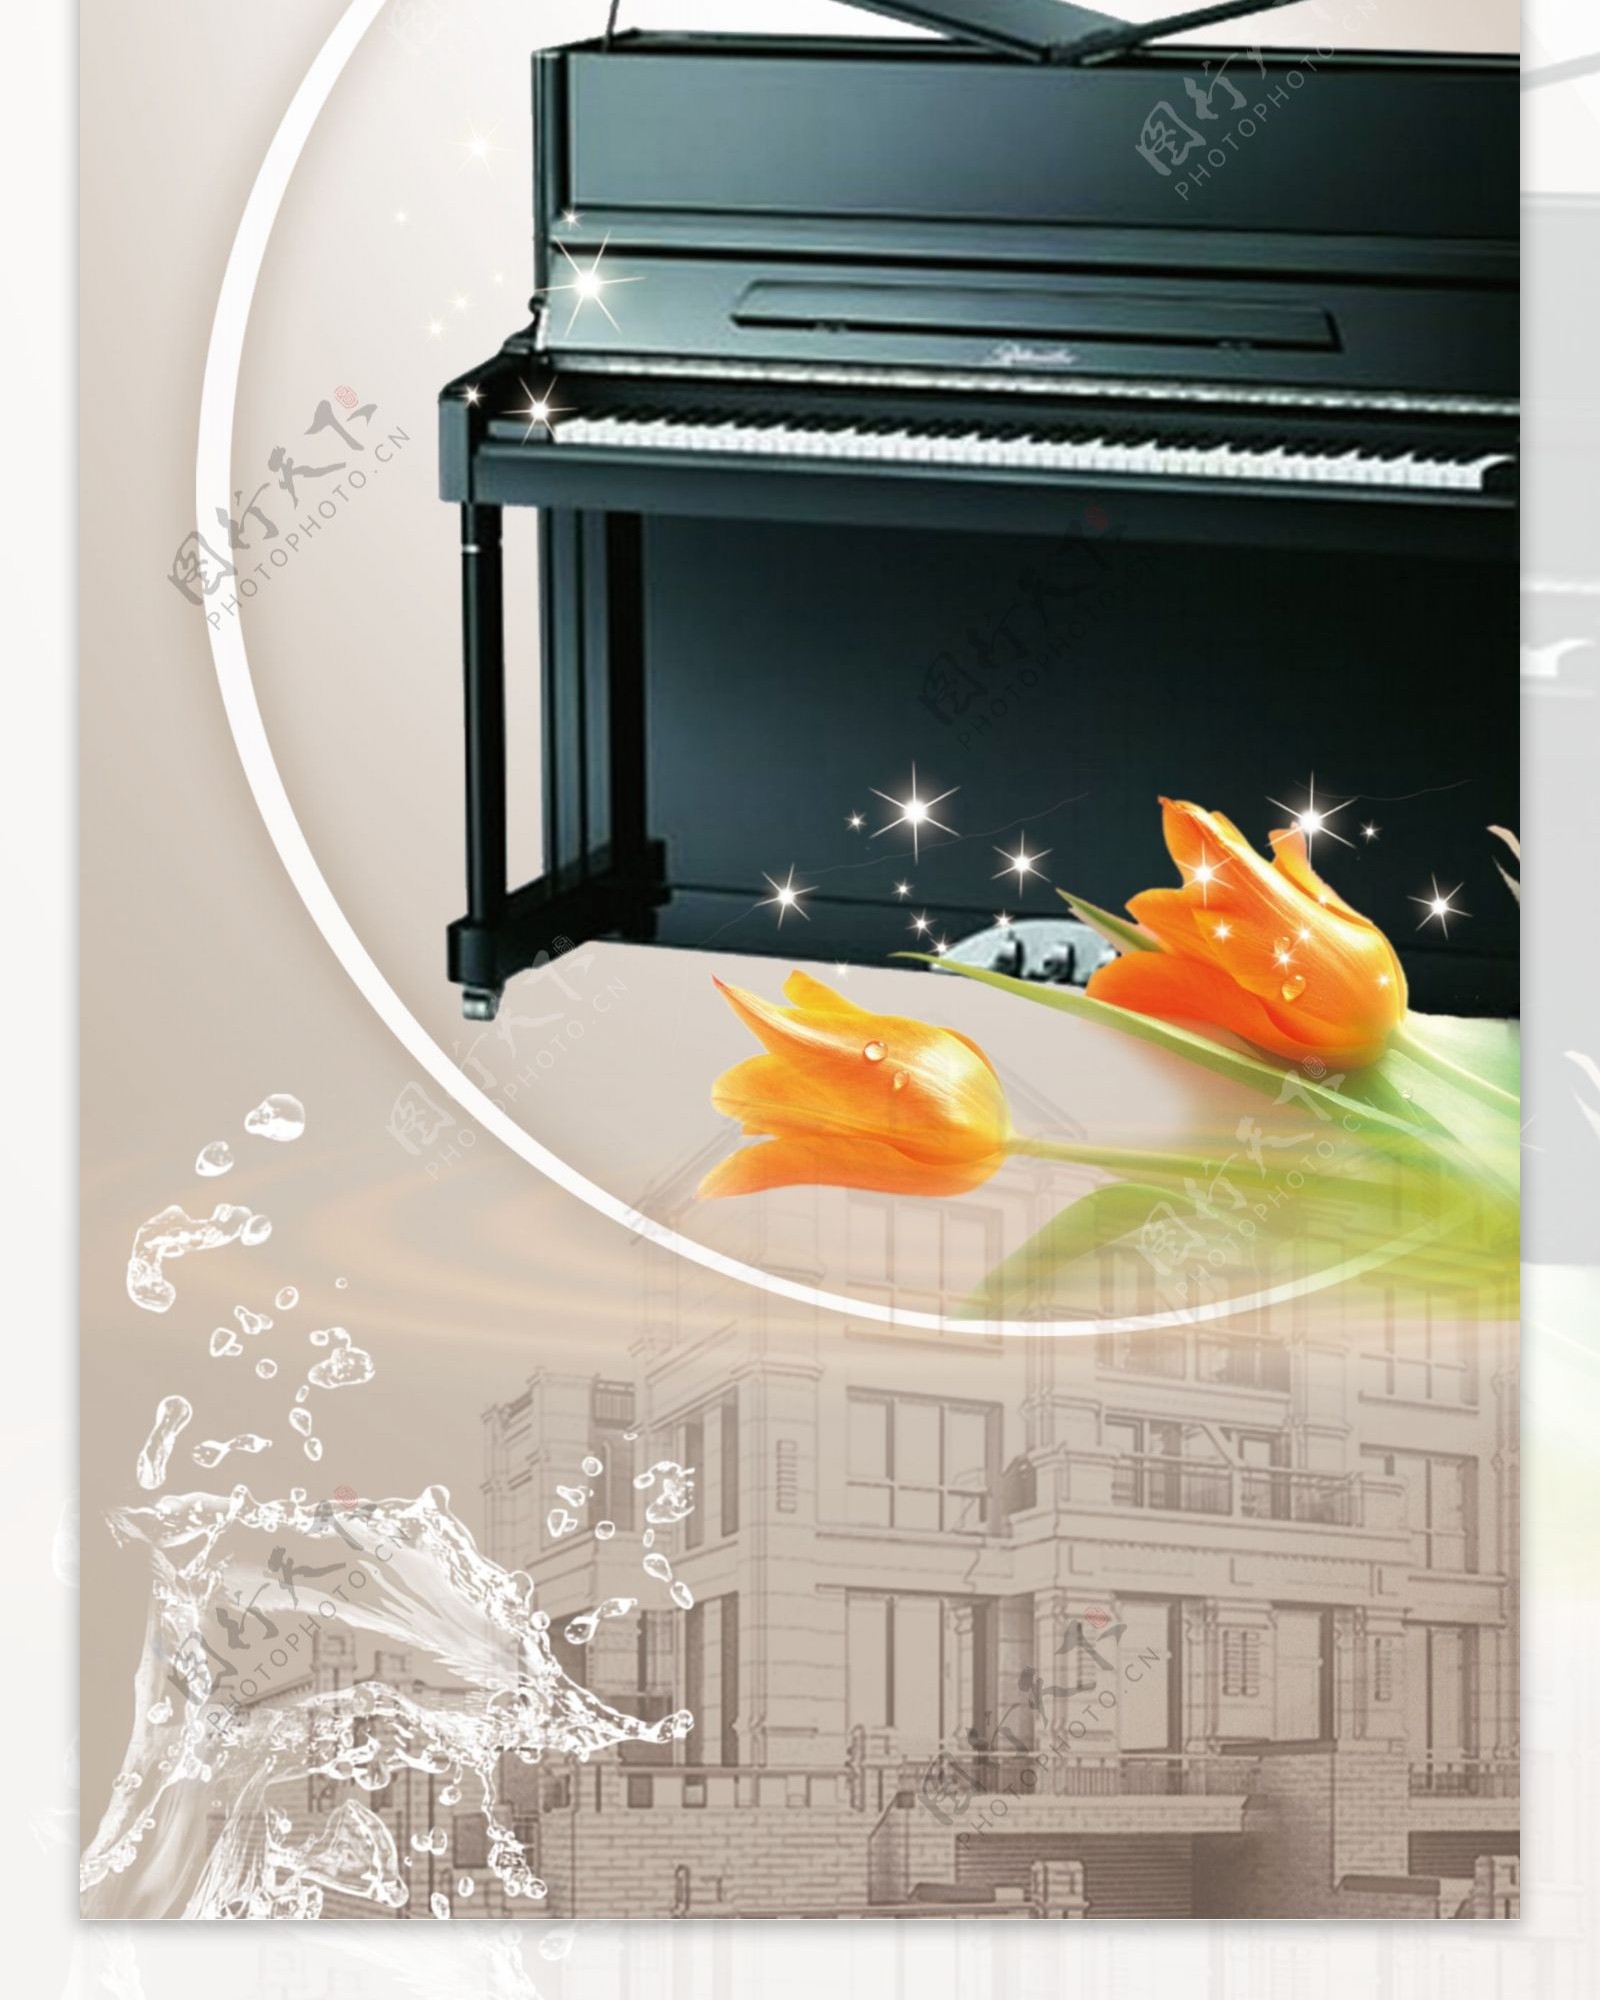 珠江钢琴展架图片